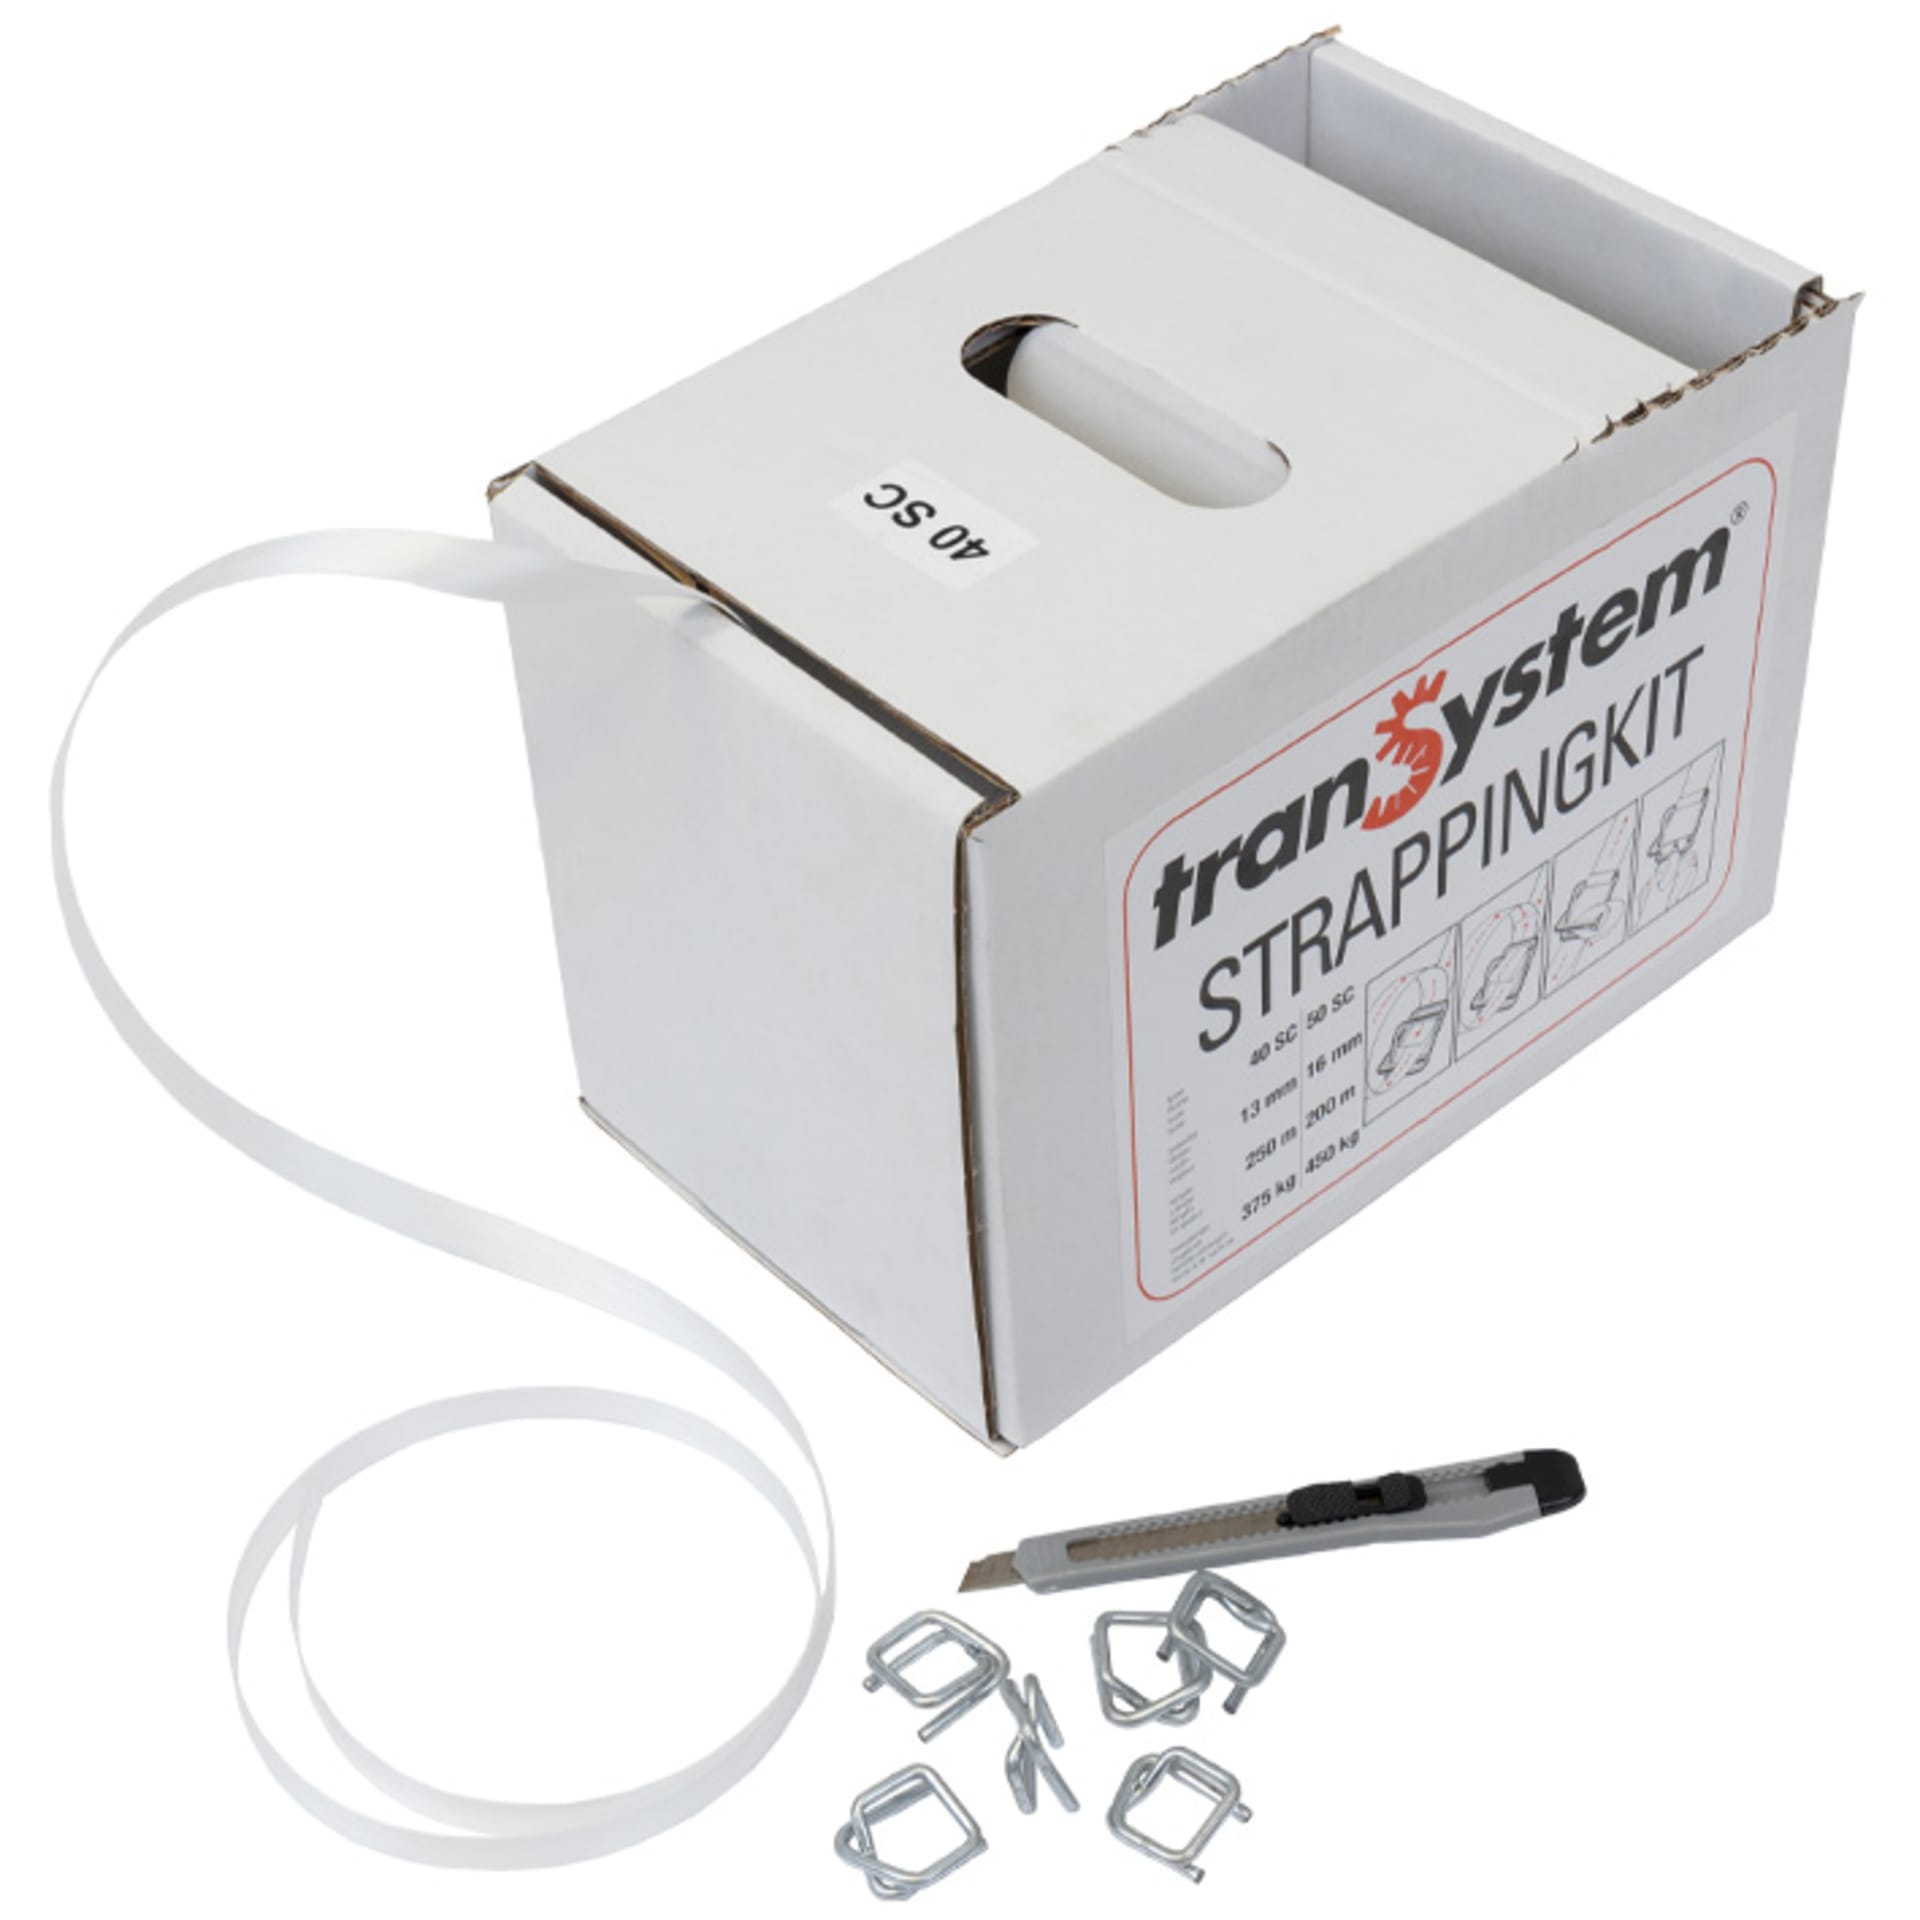 Polyesterband "Dispenser Box", 13mmx0,5mmx250lfm, weiß, inklusive 100, Metallklammern und Messer